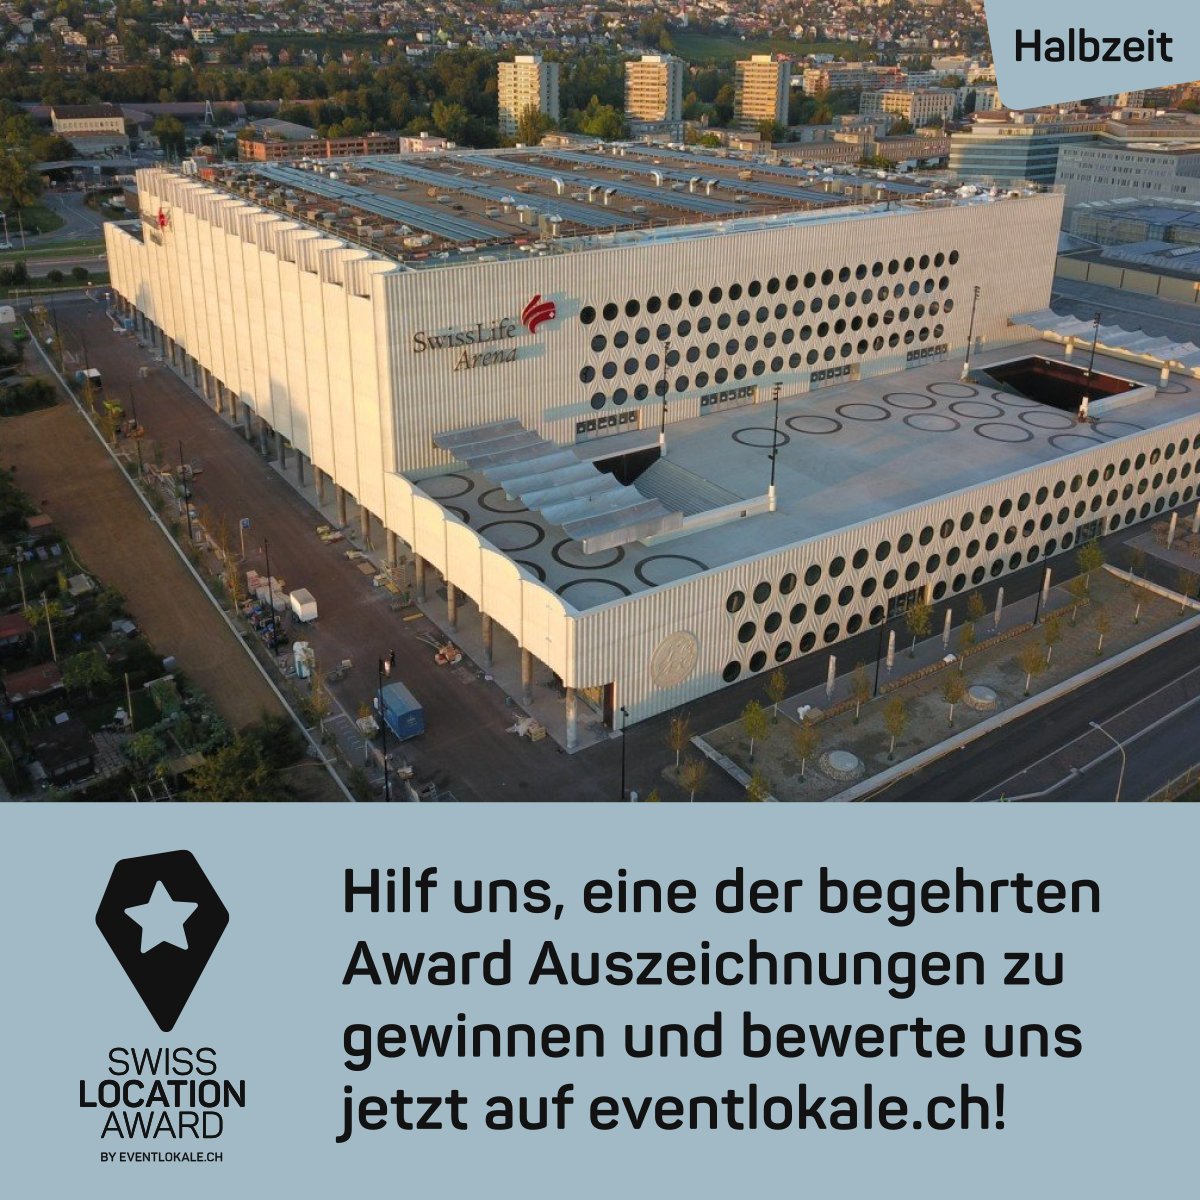 Halbzeit beim Voting für den Swiss Location Award.  🏟️

Unsere meisterliche Arena ist dieses Jahr erneut für den Swiss Location Award nominiert und Ihr dürft weiterhin für uns abstimmen. 😎

Vote hier 👉 lnkd.in/ePVKgyRu

Merci für eure Stimme! ☝️

#deZischmeh